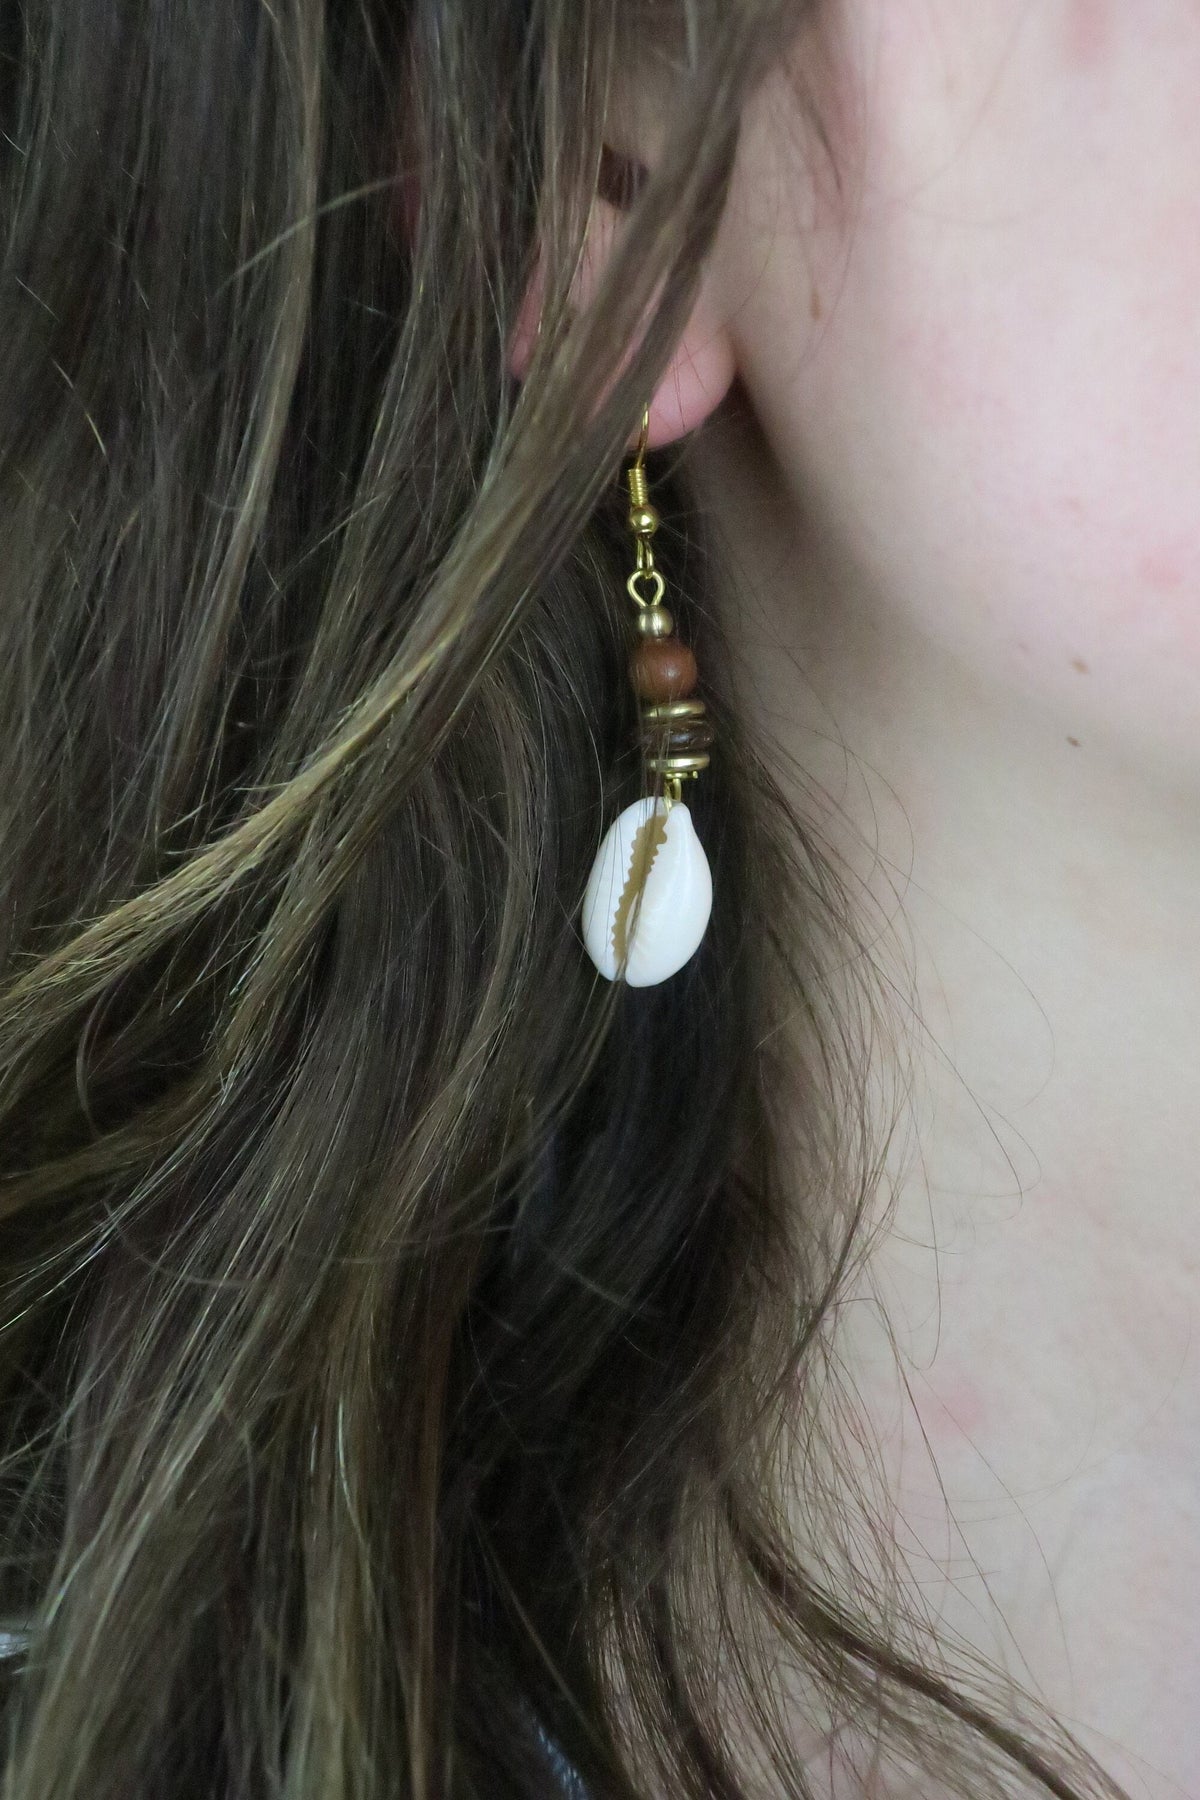 Muschel Ohrringe im Hippielook mit Holzperlen und goldenem Ohrhänger